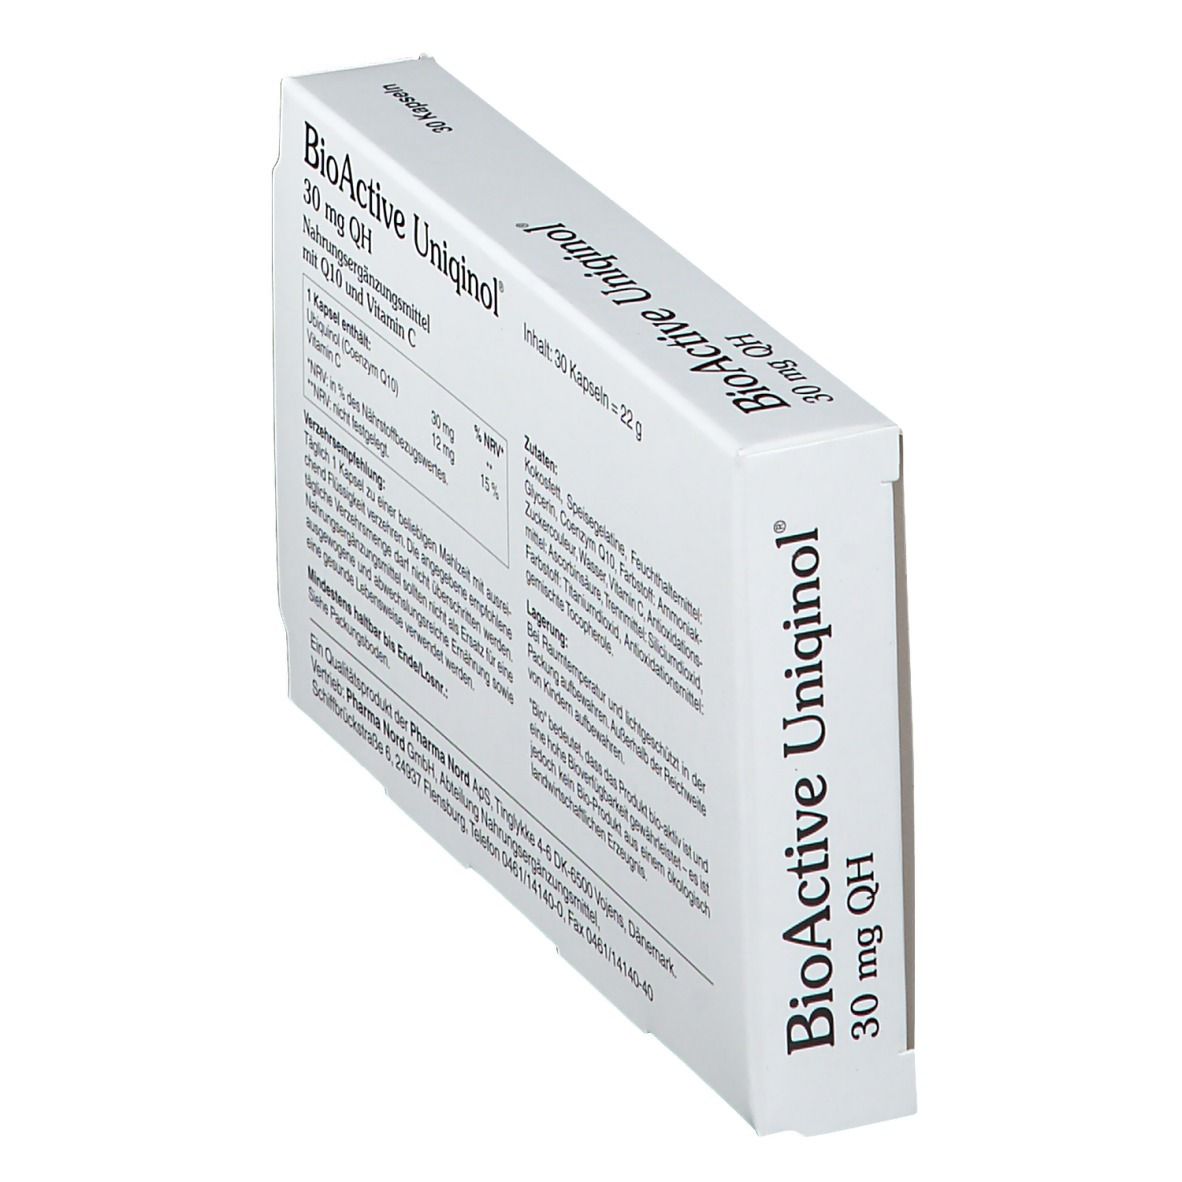 BioActive Uniqinol 30 mg